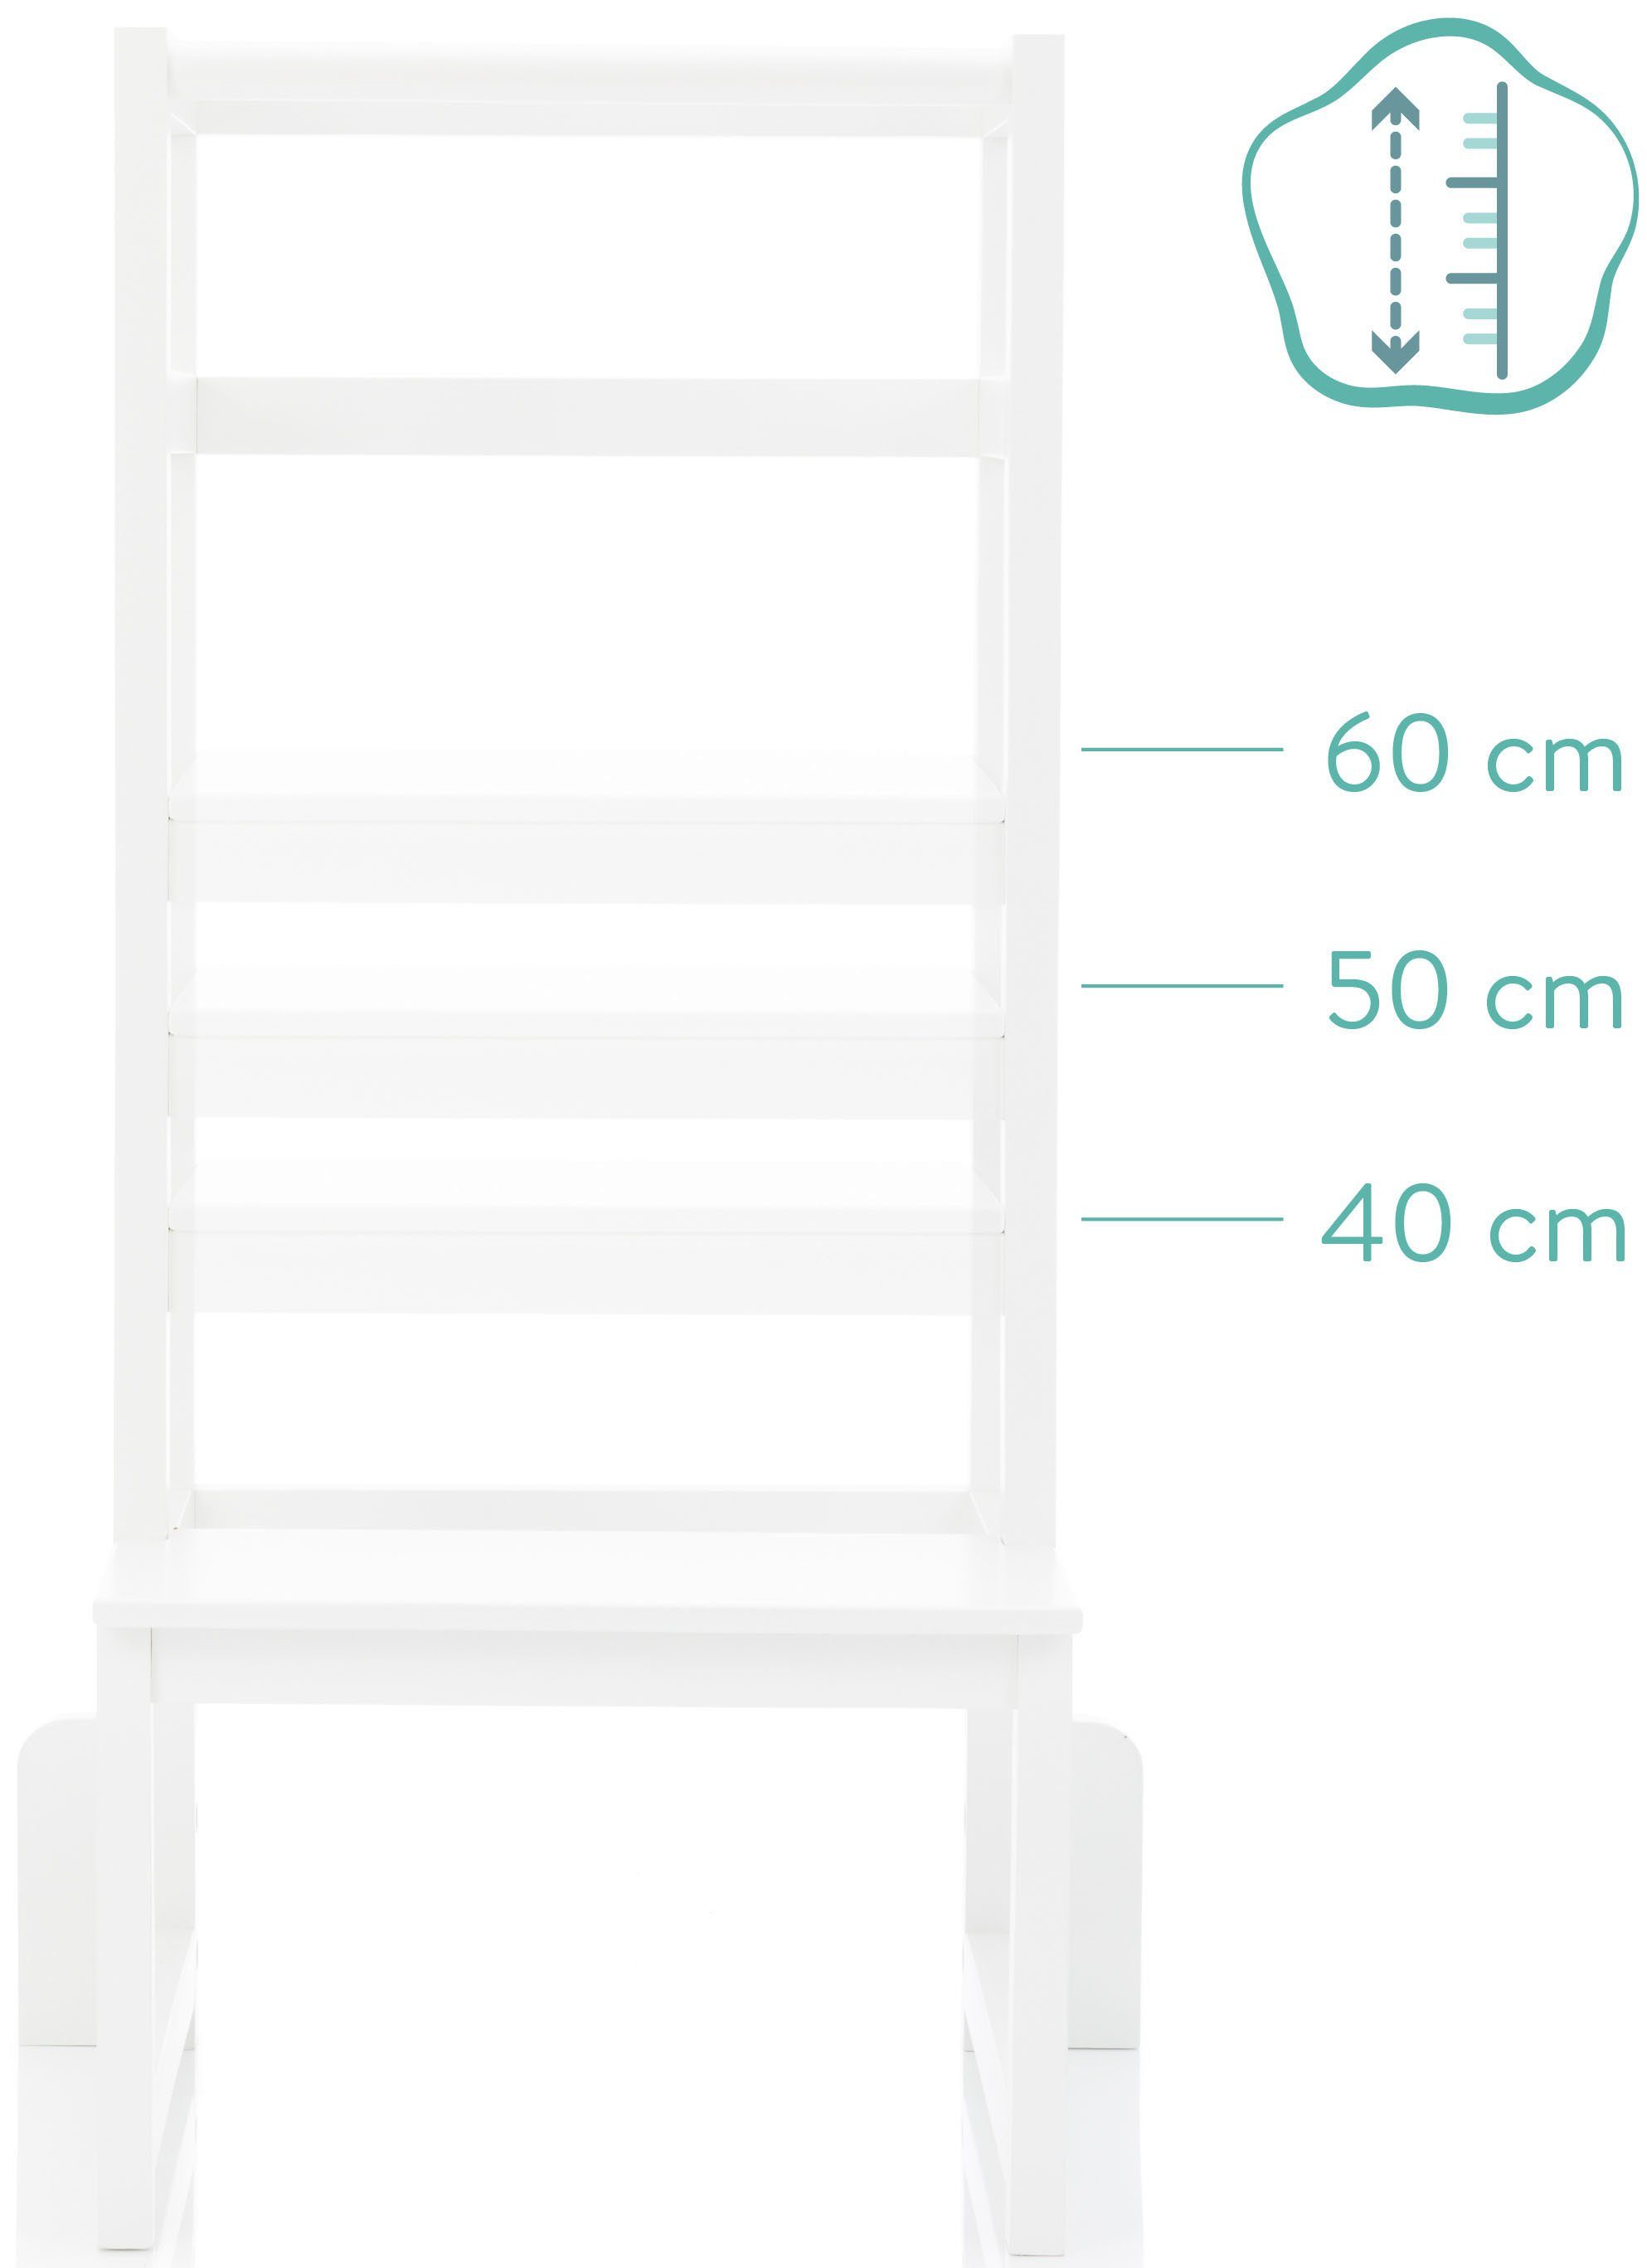 Fillikid Stehhilfe Lernturm, weiß, aus Holz, Mitwachsend dank  höhenverstellbarem Stand- und Fußbrett (40/50/60 cm)